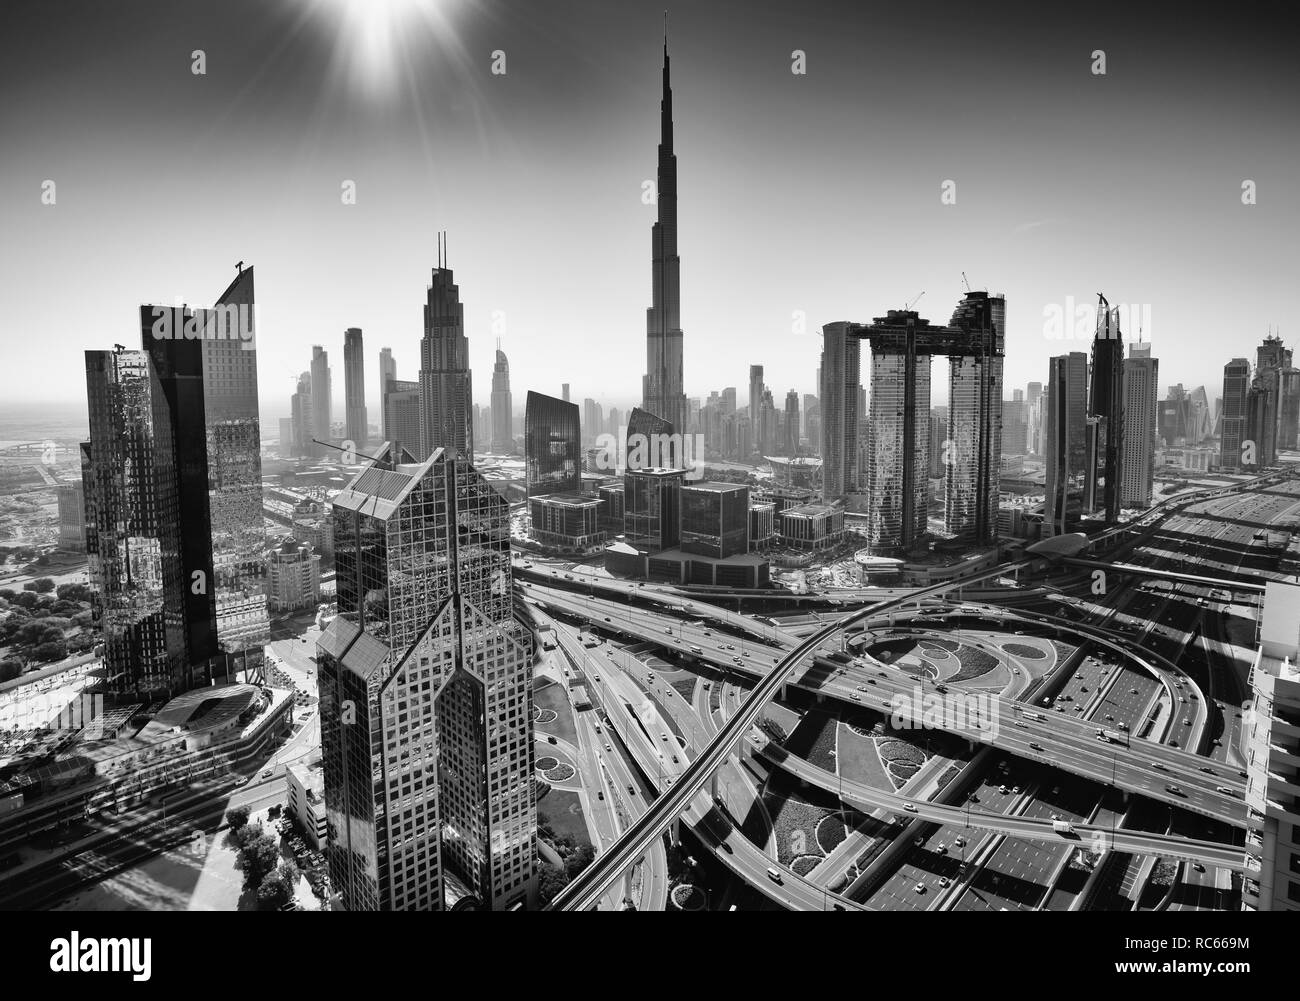 Blick auf die Skyline von Downtown District in Dubai mit dem Burj Khalifa tower prominent, Vereinigte Arabische Emirate Stockfoto